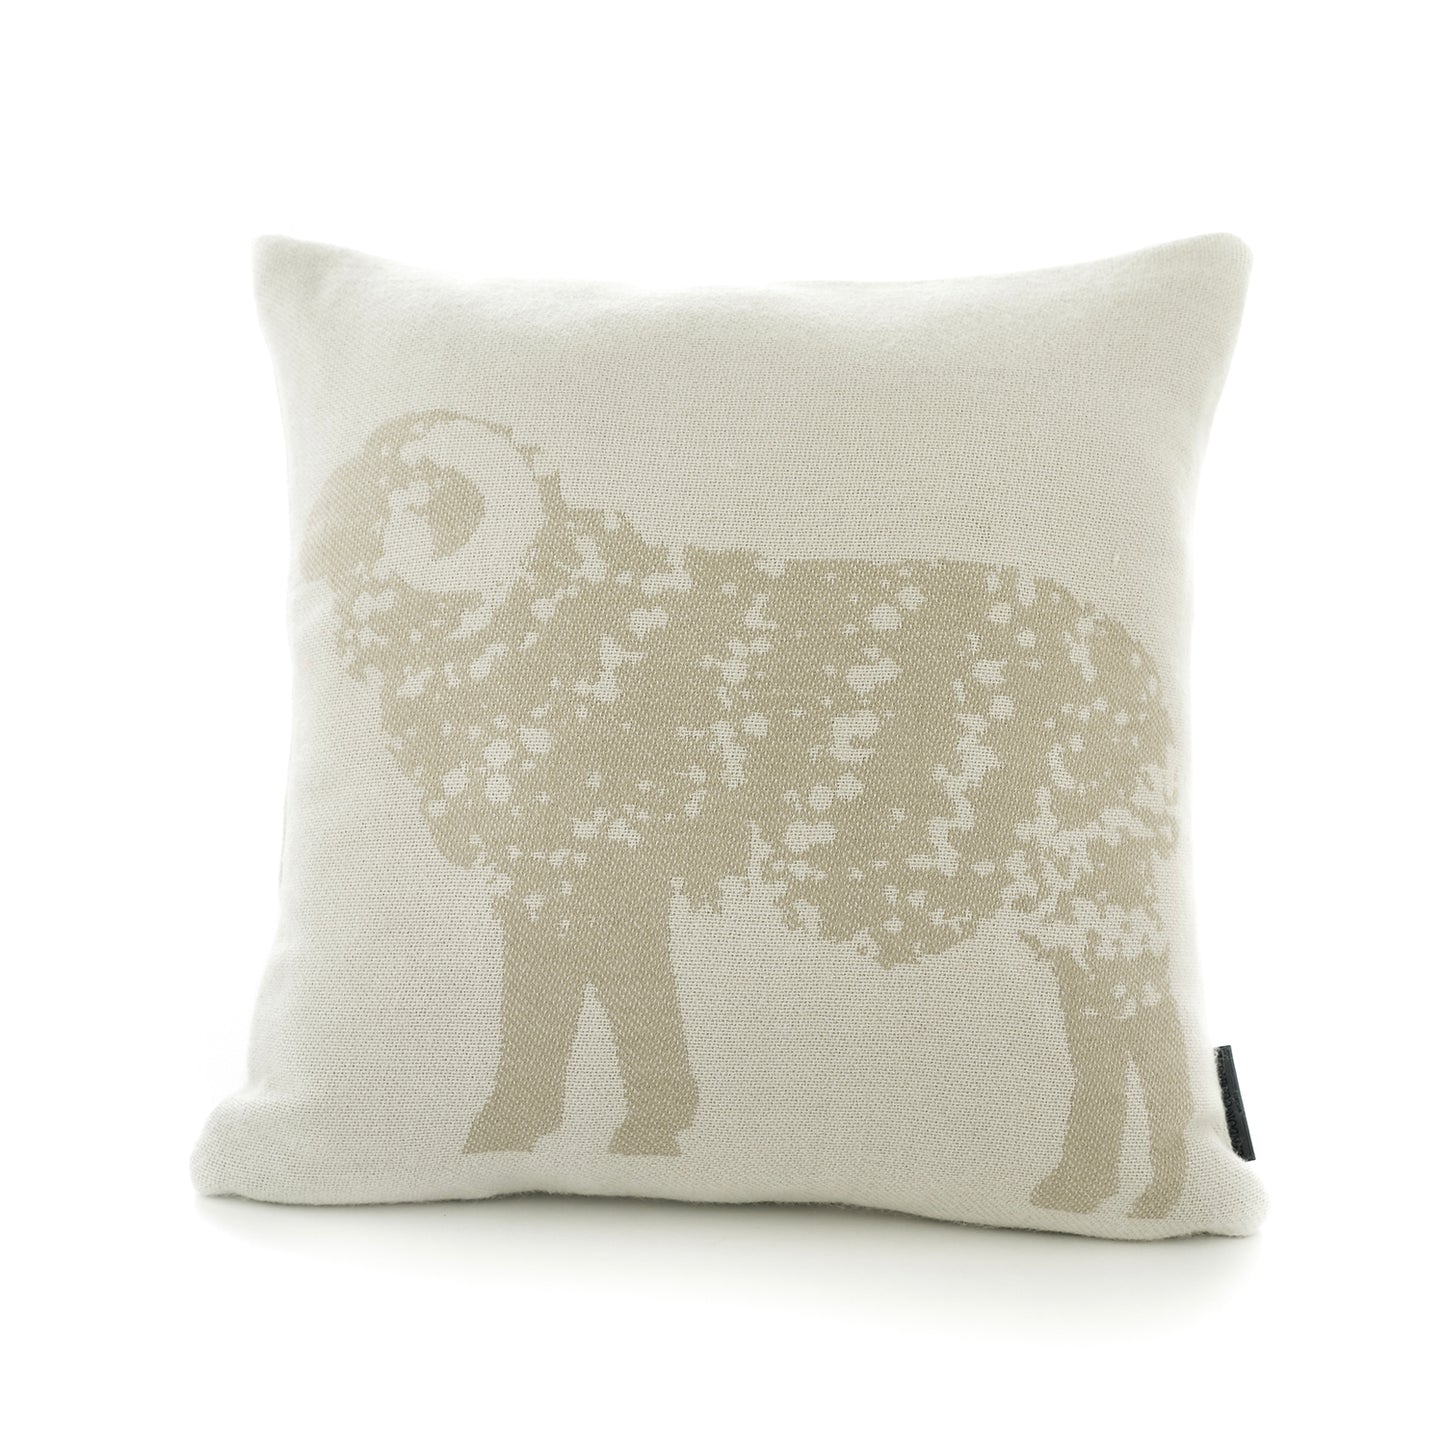 The Lyndon Company Ram Grey Soft Knitted Cushion (45cm x 45cm)